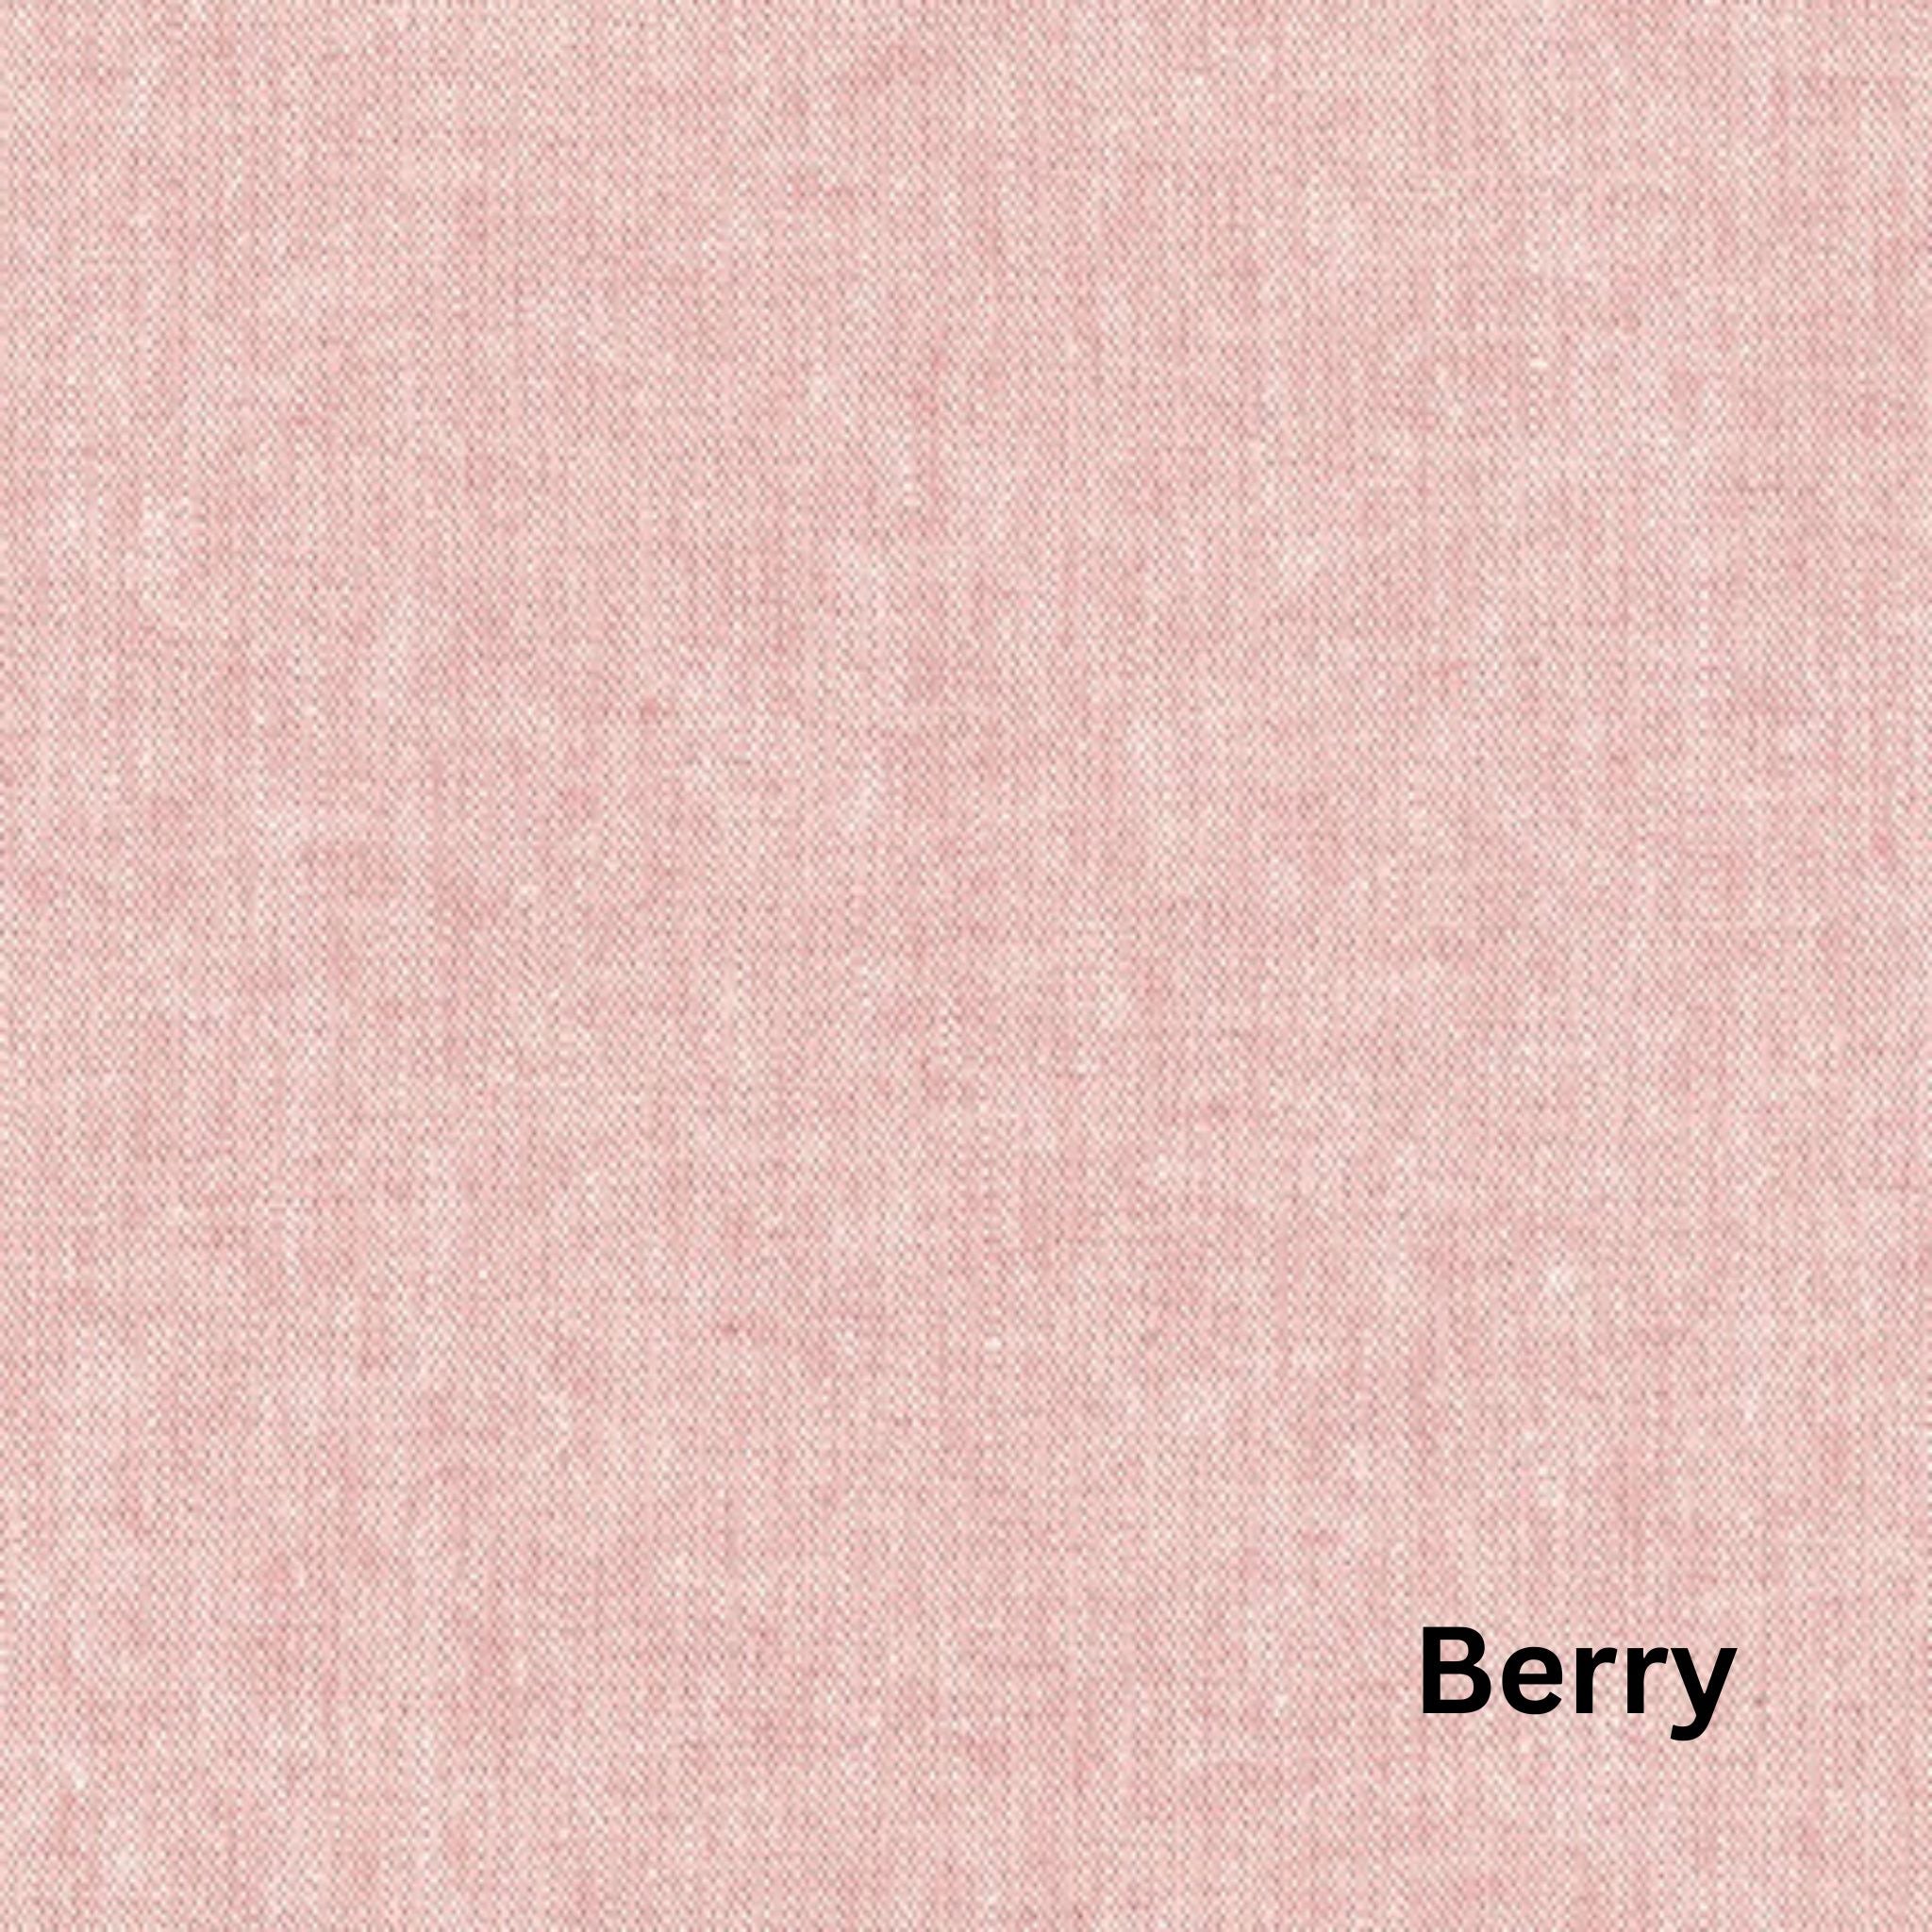 essex dyed yarn linen mix berry - Robert Kaufman